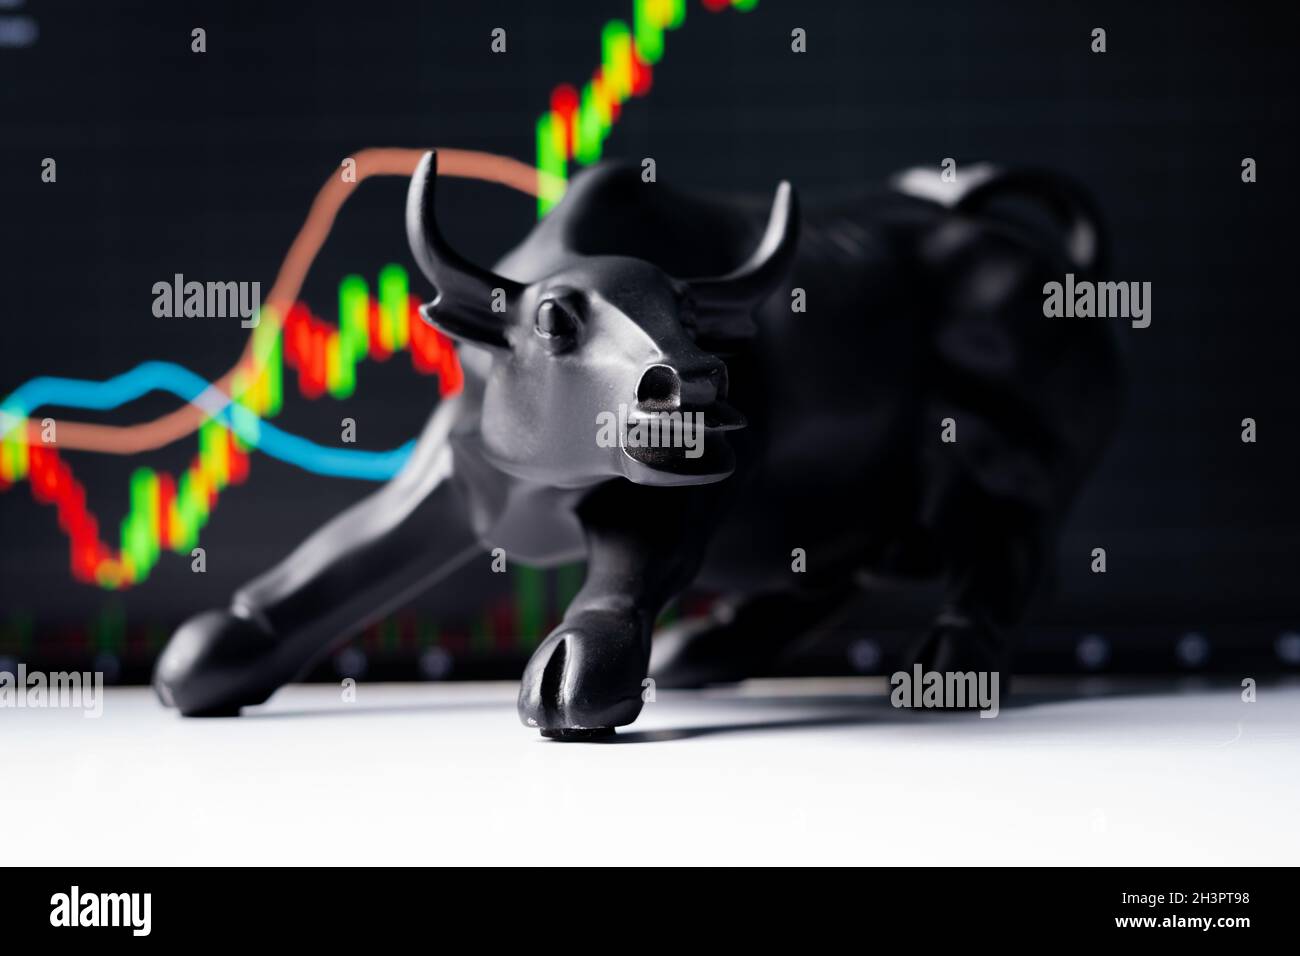 Sélective Focus sur le taureau, concept de taureau, boom ou l'augmentation de la Bourse montrant en augmentant les graphiques et le taureau entrant dans le cadre. Banque D'Images